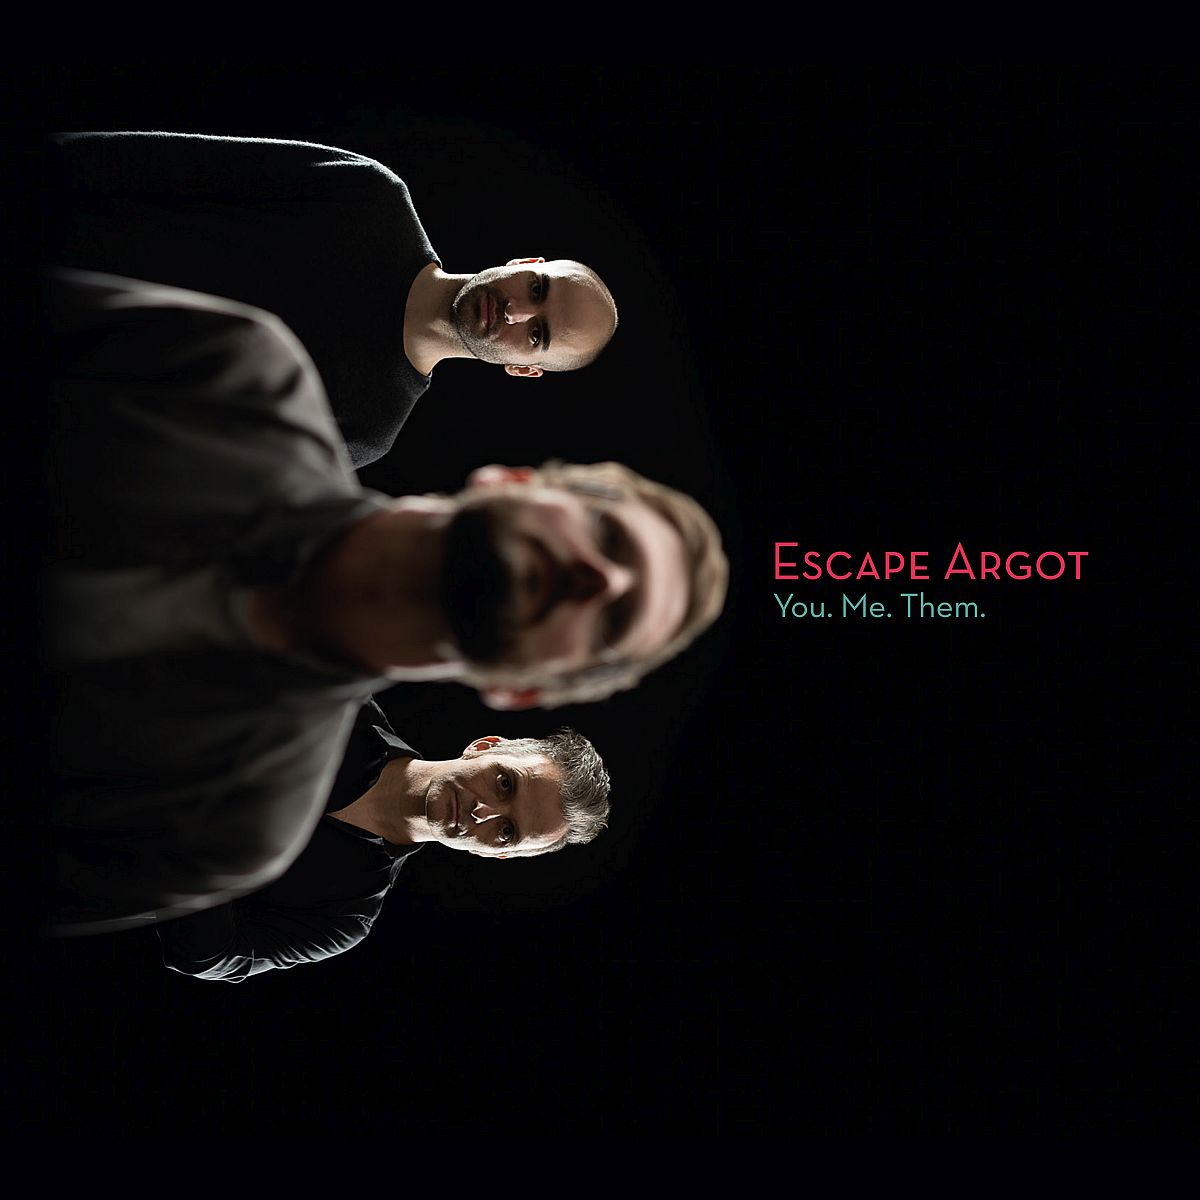 Escape_Argot_You.Me.Them_1200pix